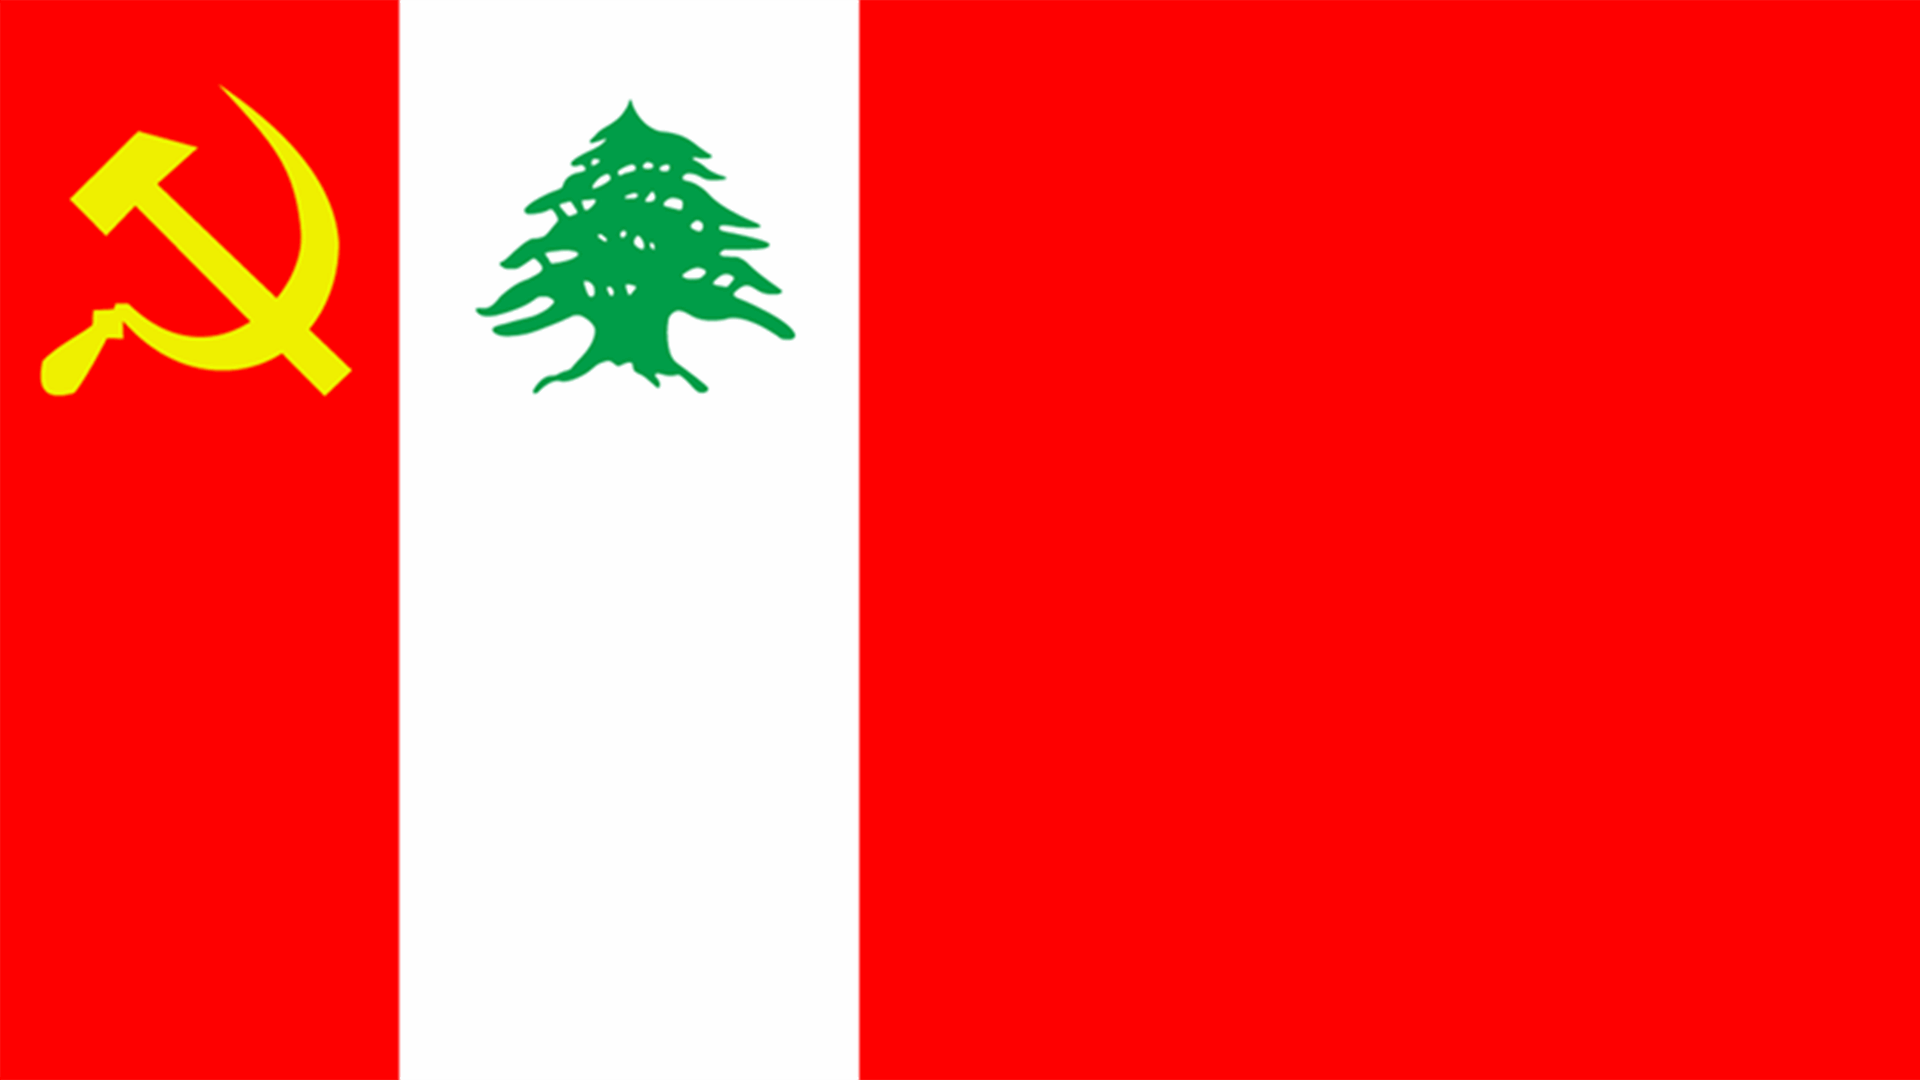 الحزب الشيوعي اللبناني لاهالي عكار: للتظاهر وشل مؤسسات الدولة وصولا للعصيان المدني